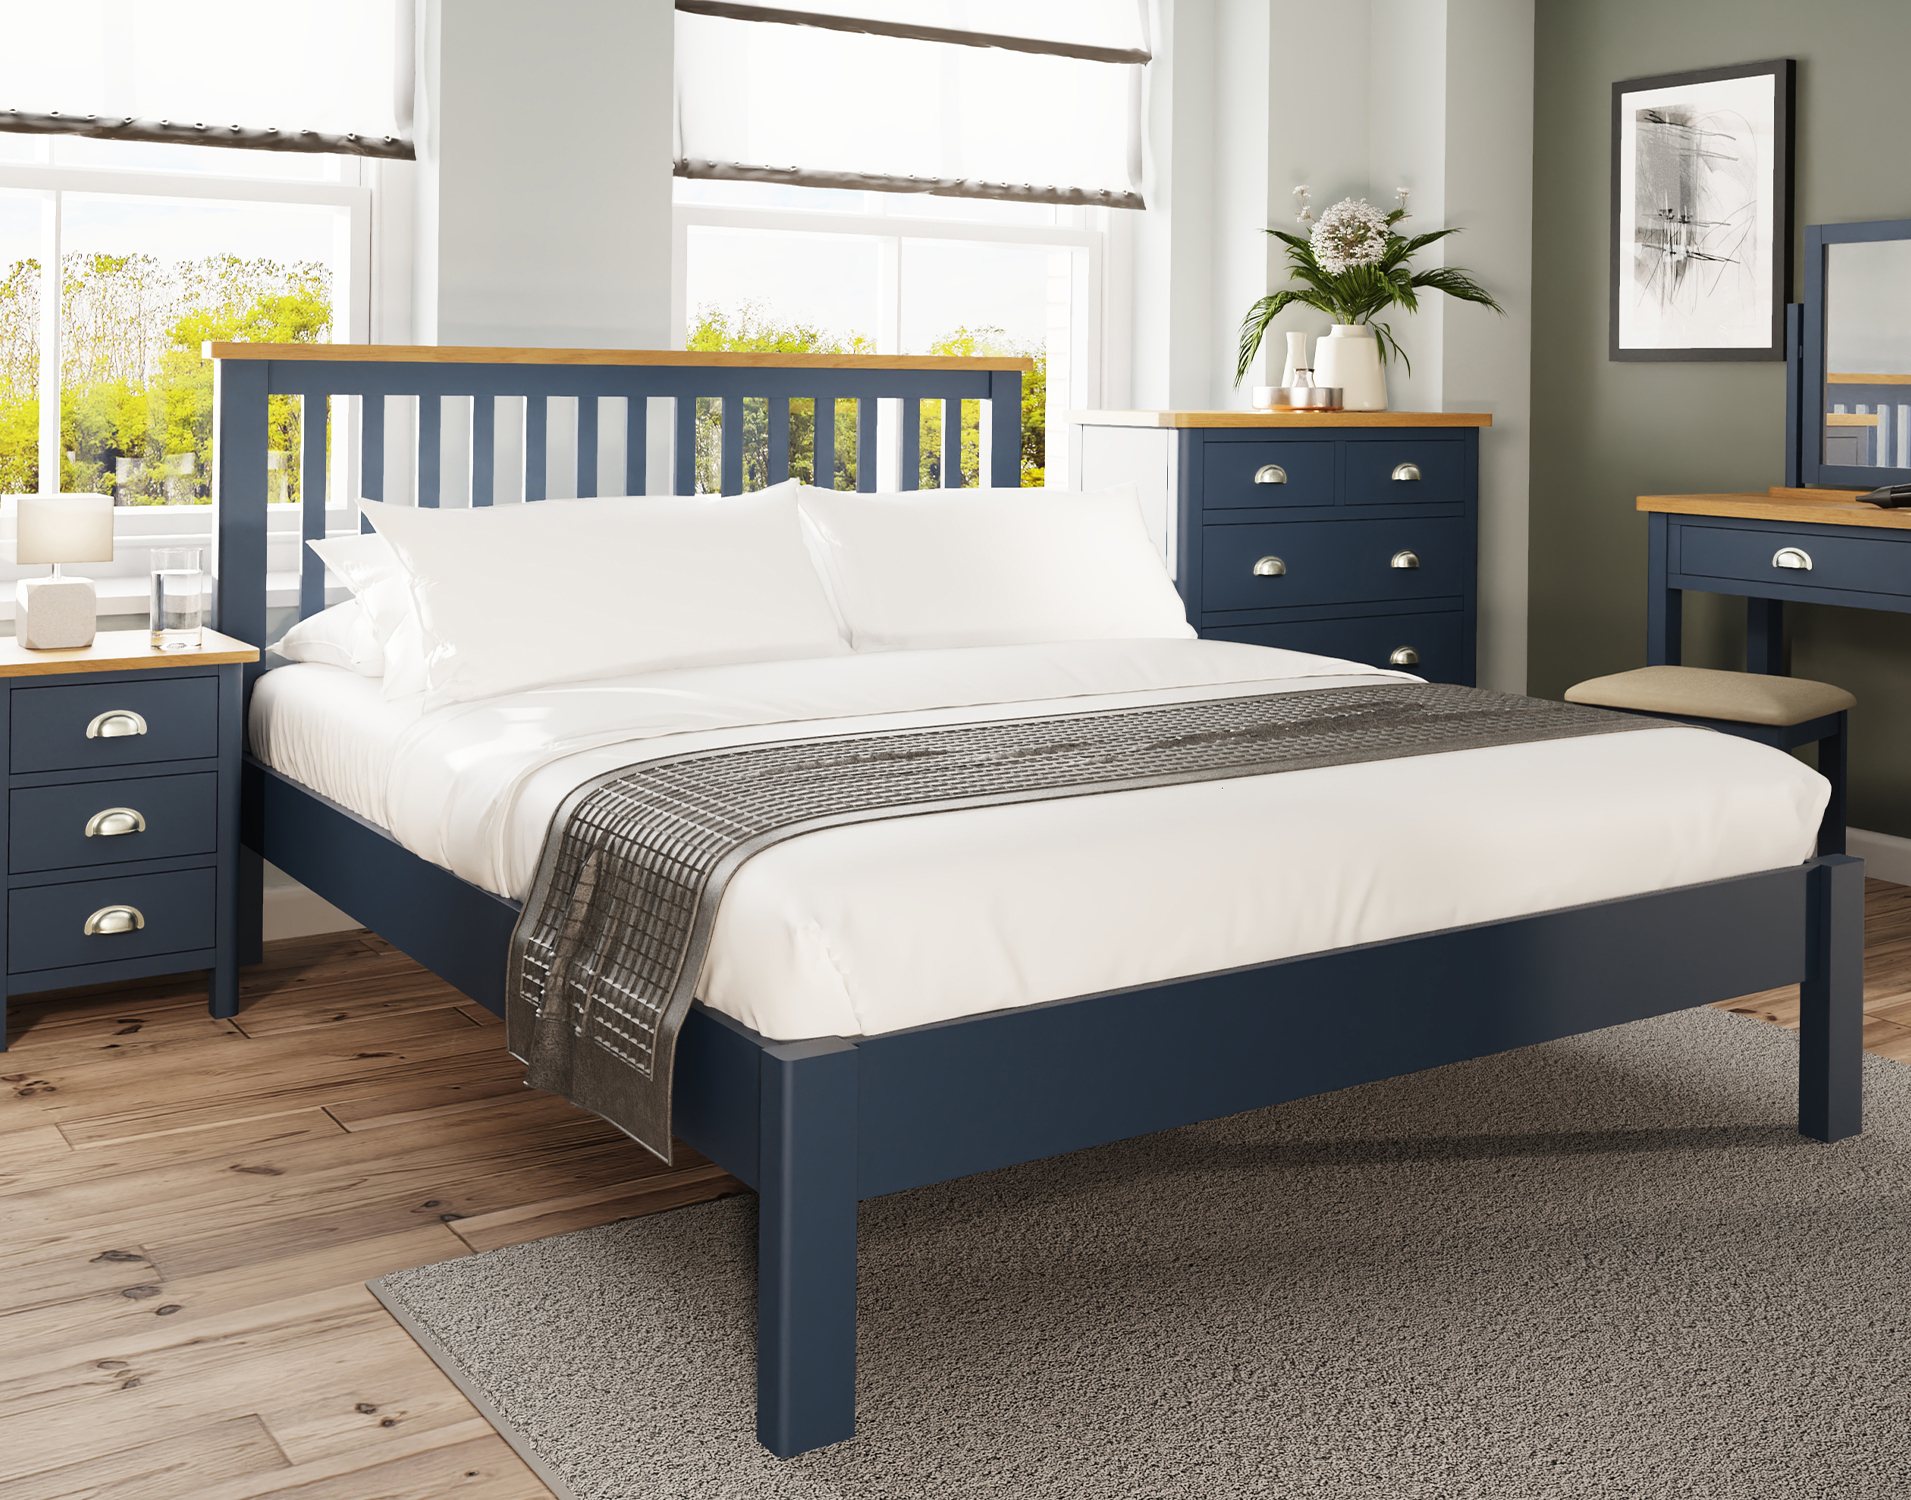 blue bedroom with oak furniture